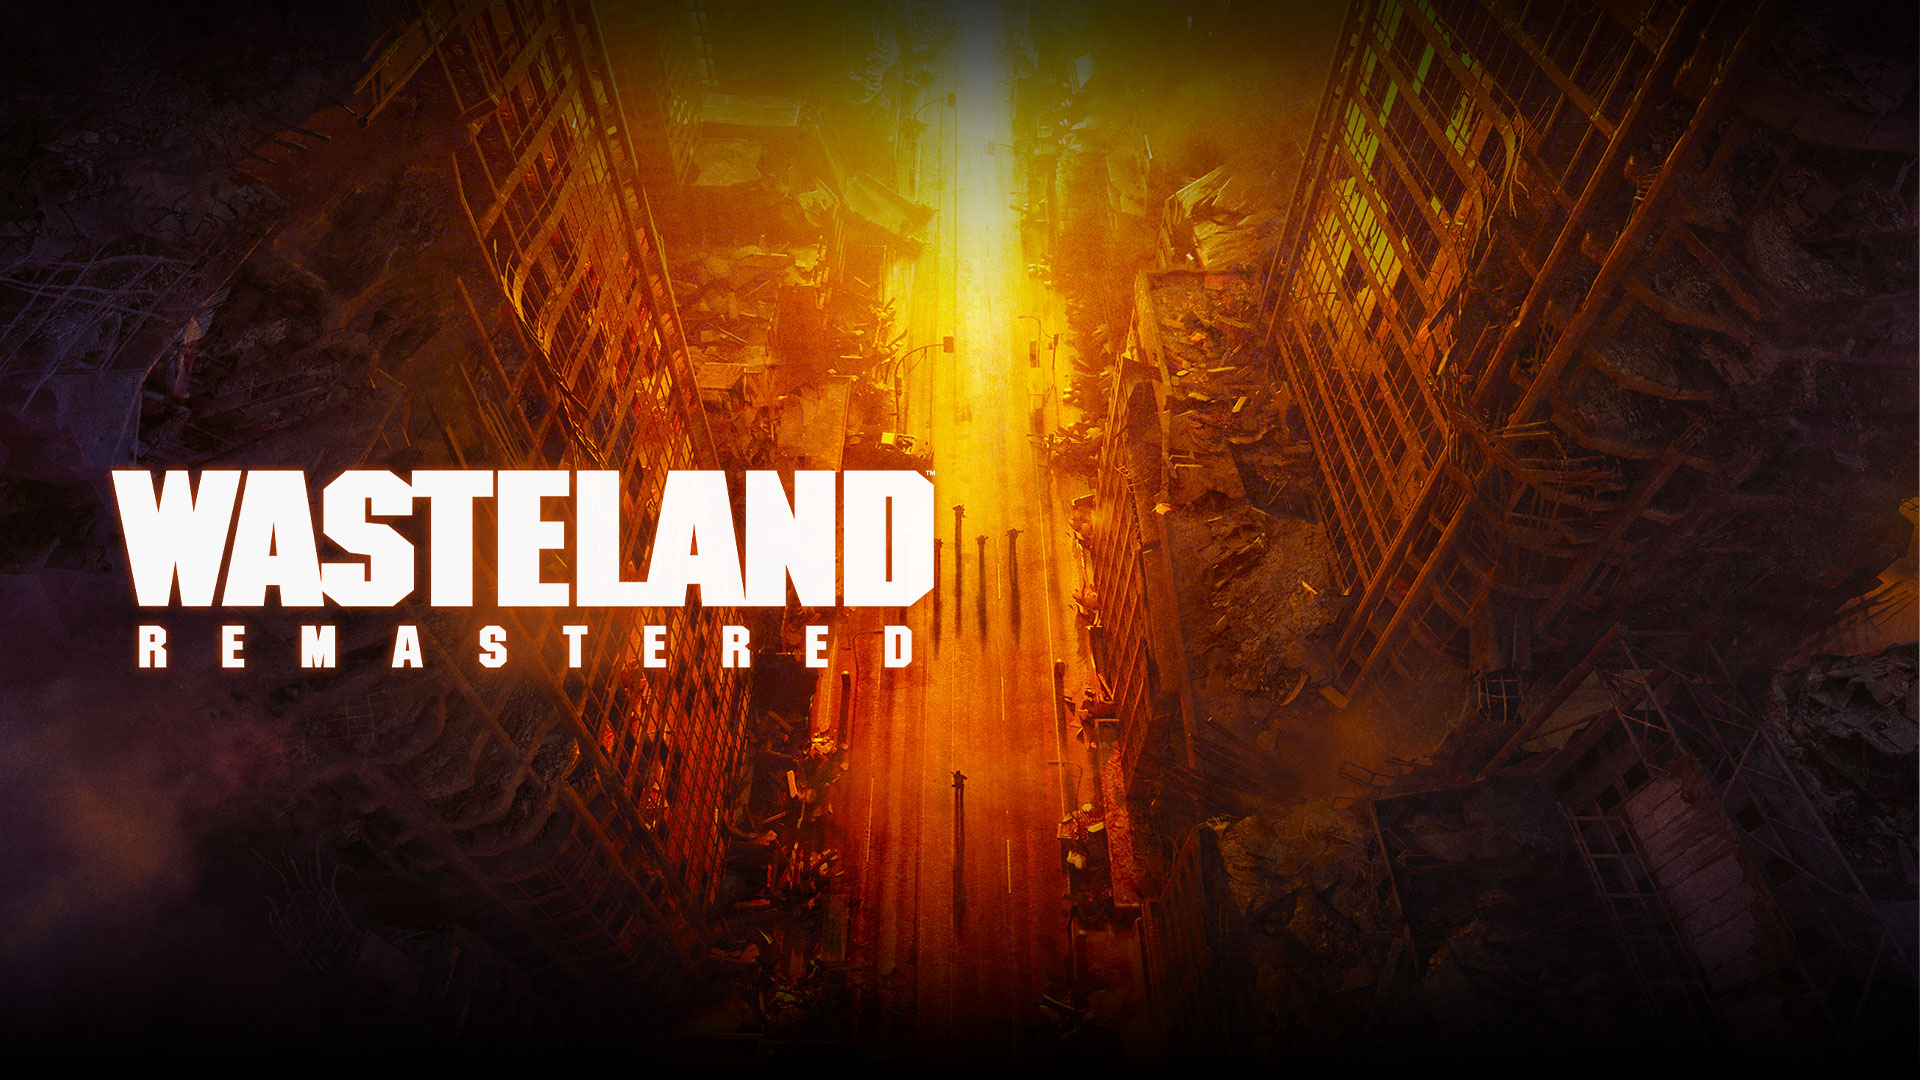 Wasteland Remastered, vy från ovan över förstörda byggnader och människor på gatan i gula, orange och röda nyanser